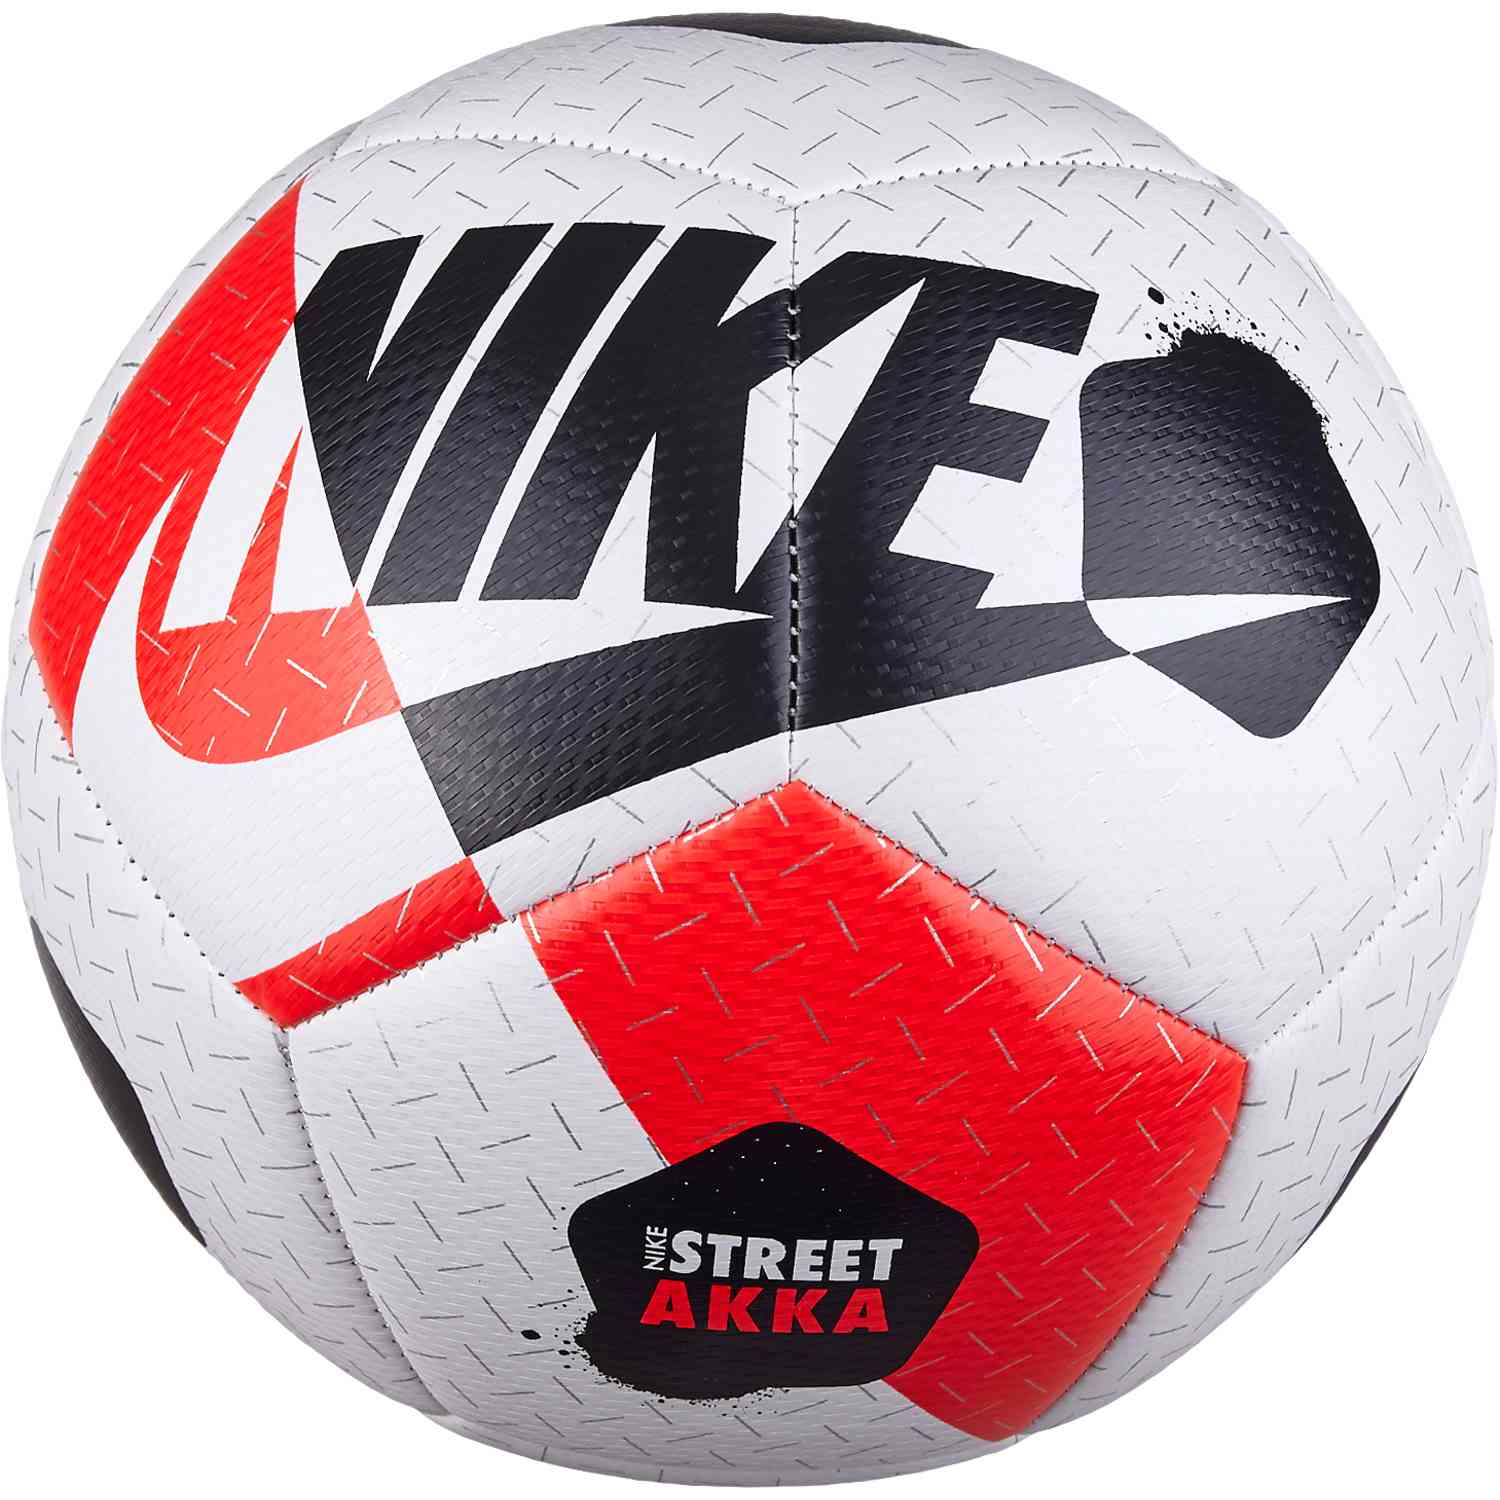 Droogte Perforeren Emuleren Nike Akka Street Soccer Ball - White/Bright Crimson/Black - SoccerPro